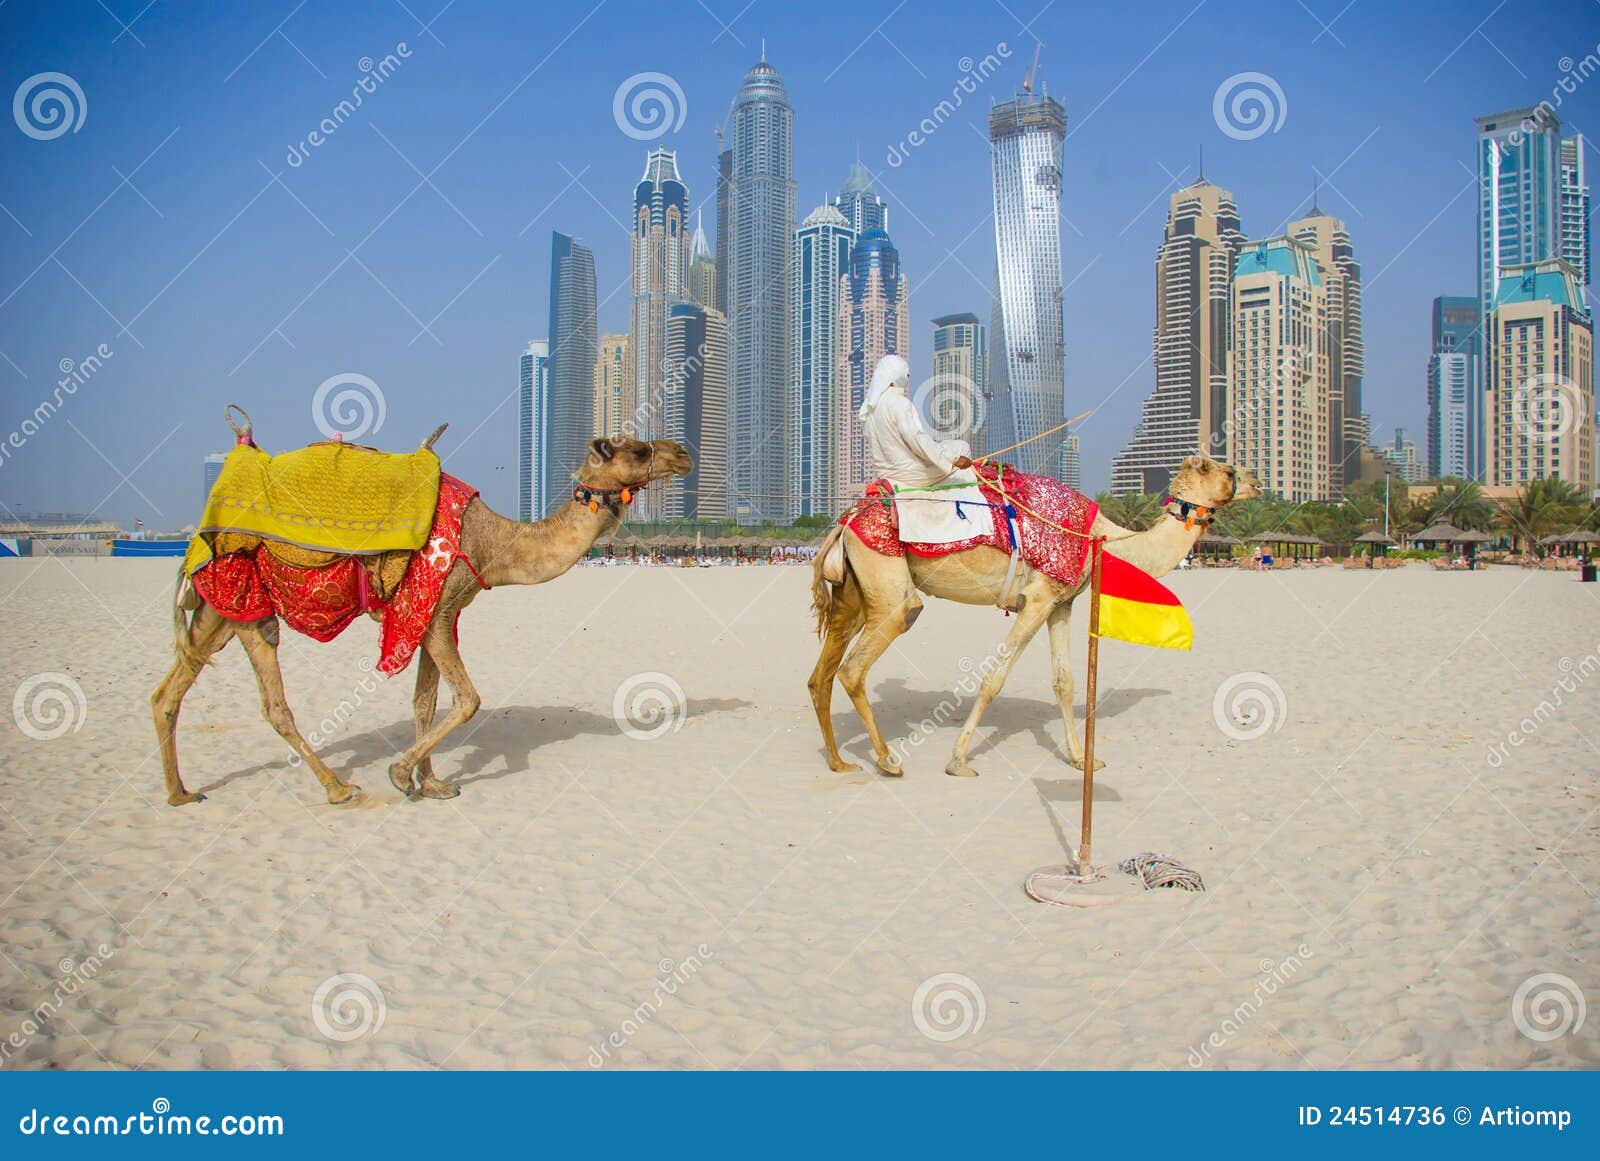 骆驼 动物 迪拜 - Pixabay上的免费照片 - Pixabay